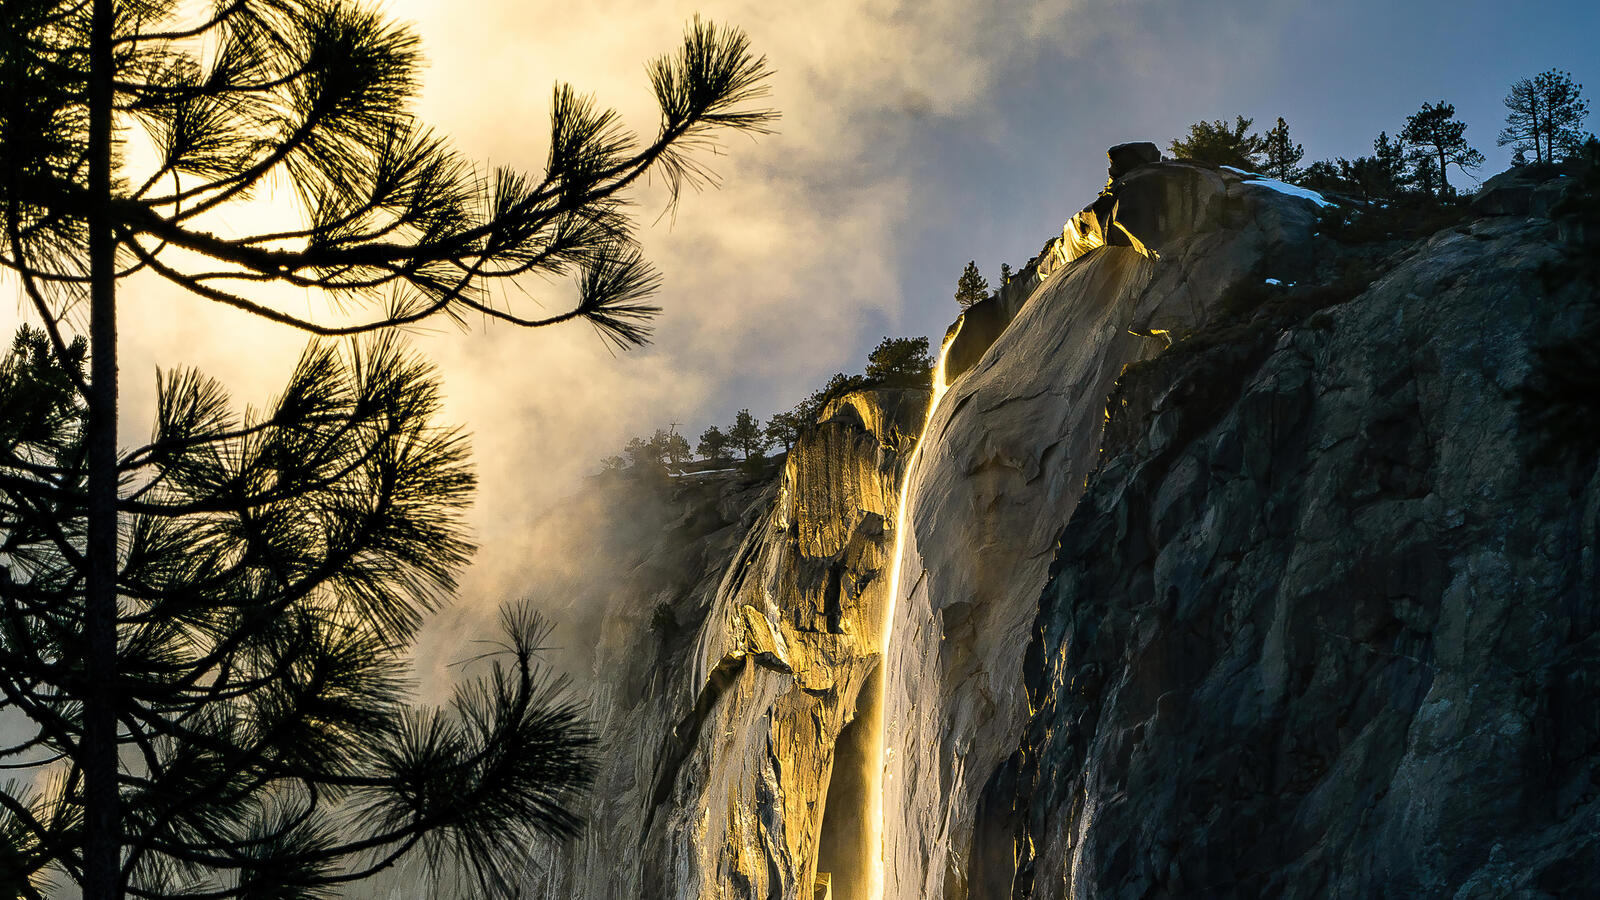 Обои водопад Йосемити природа на рабочий стол